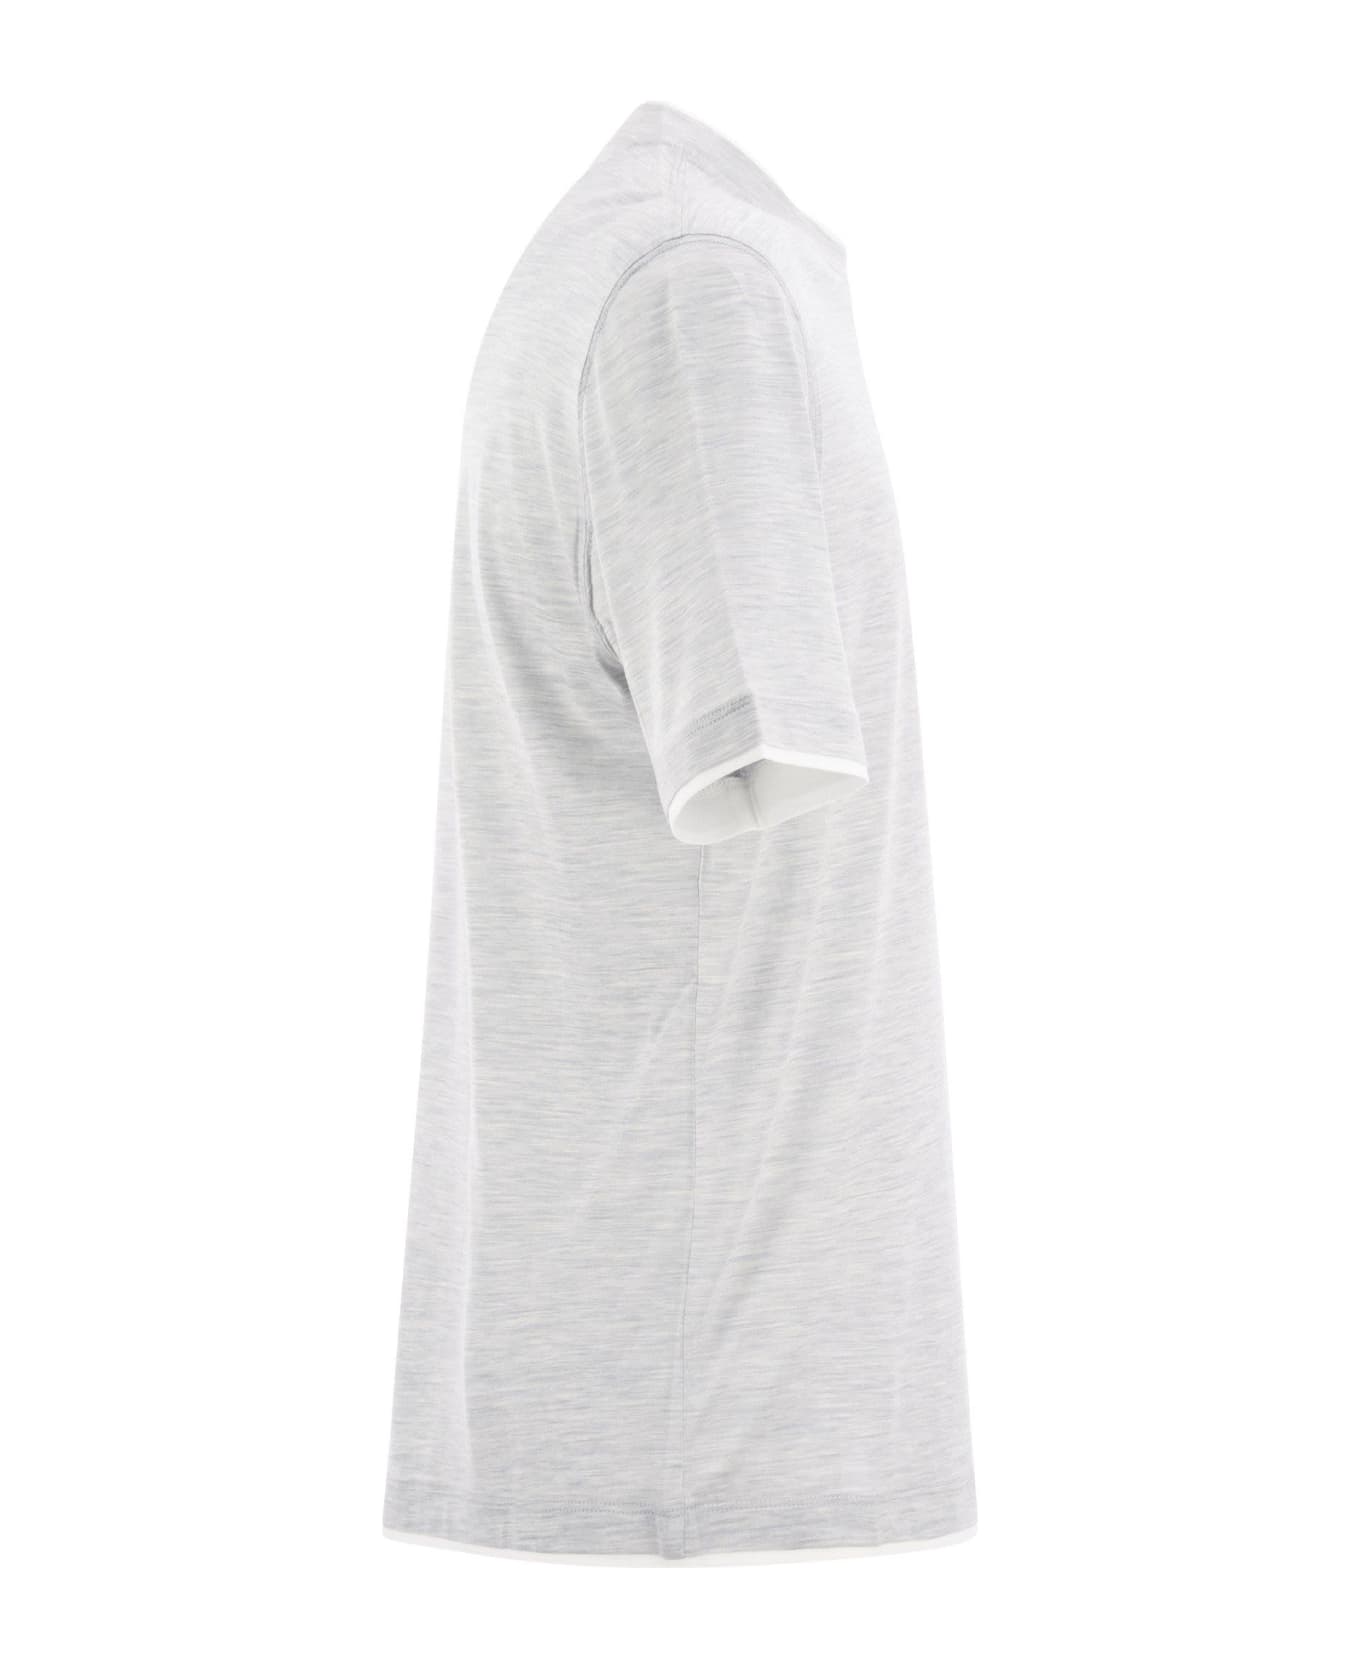 Brunello Cucinelli Slim Fit Crew-neck T-shirt In Lightweight Cotton Jersey - Pearl